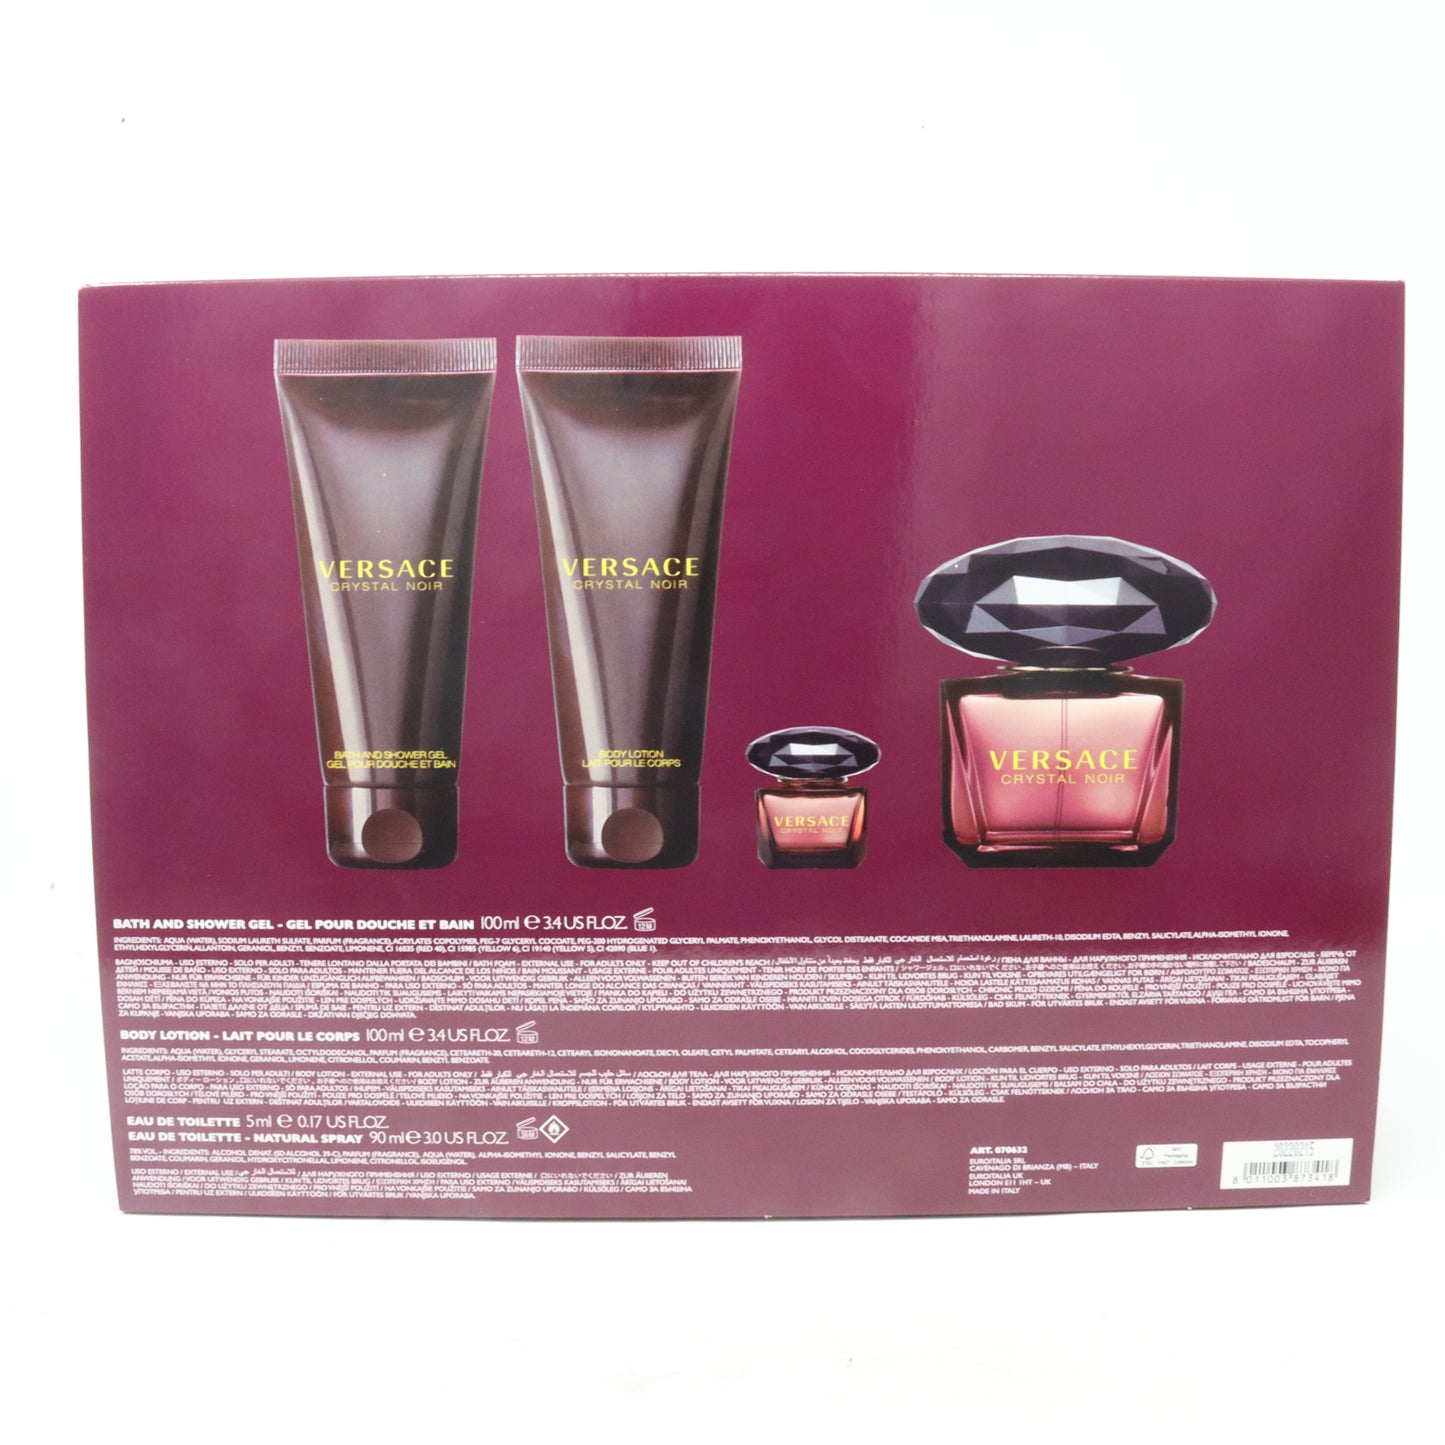 Versace Crystal Noir Eau De Toilette 4-Pcs Set  / New With Box